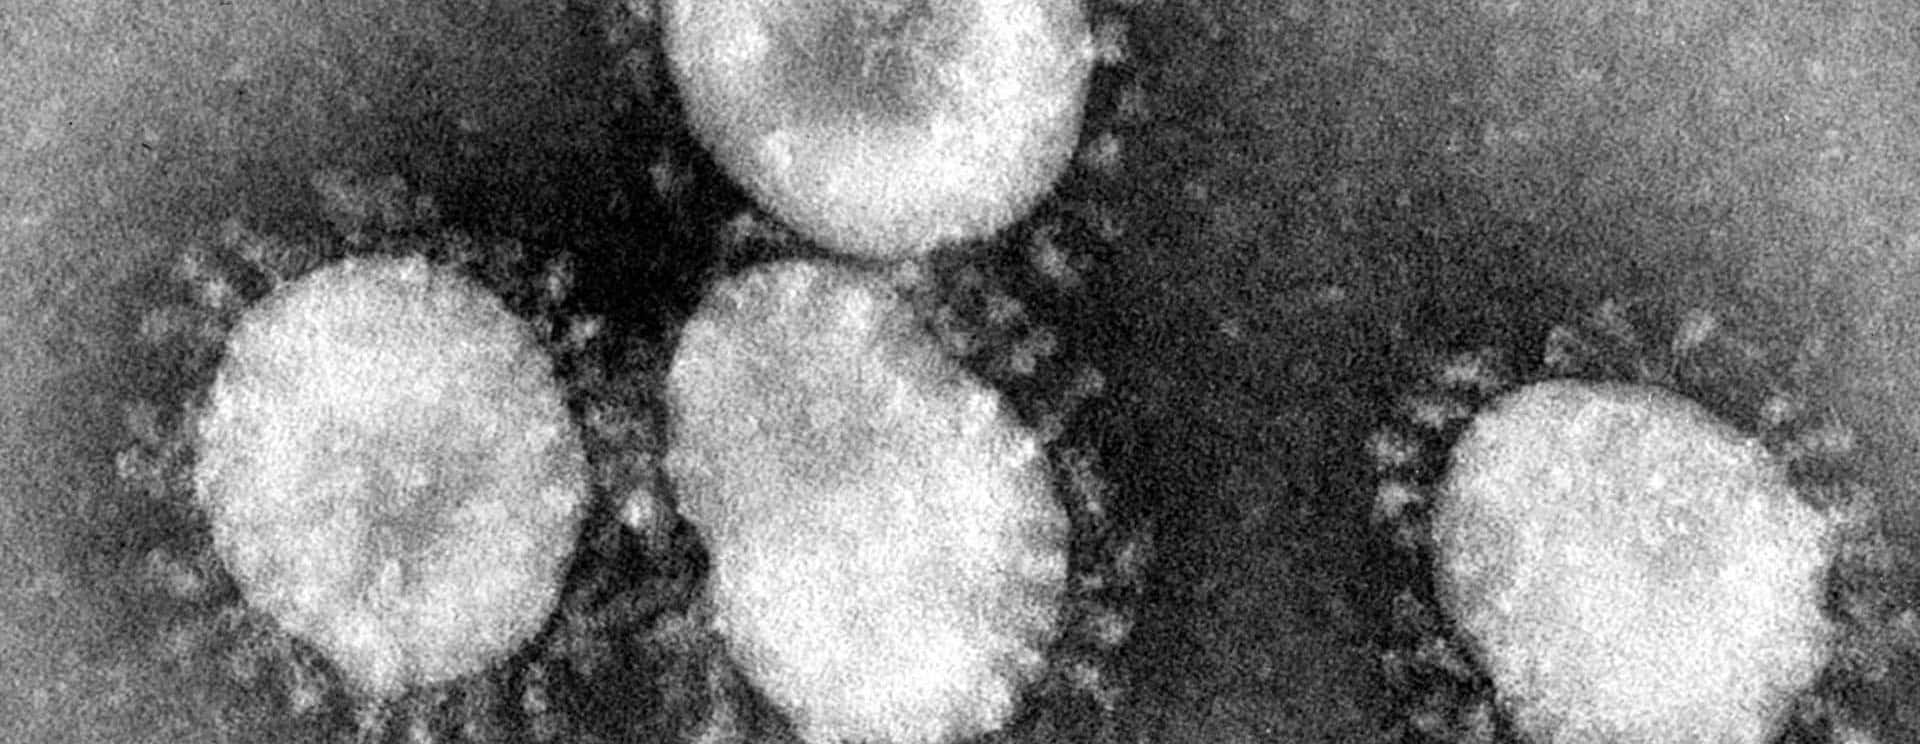 coronaviruses-jpg-73